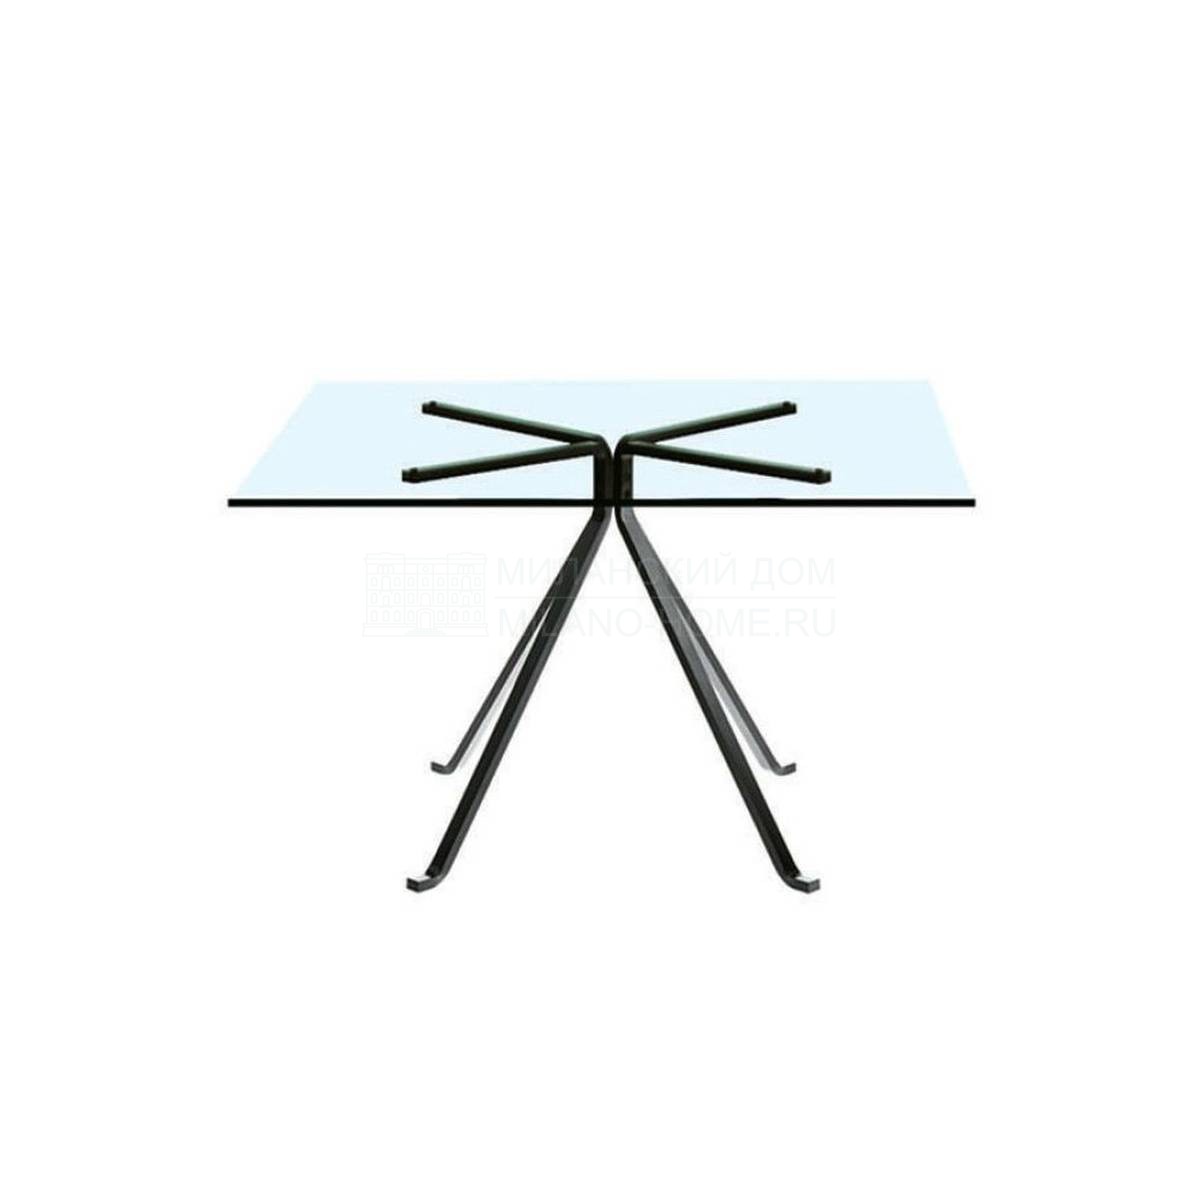 Обеденный стол Cugino из Италии фабрики DRIADE